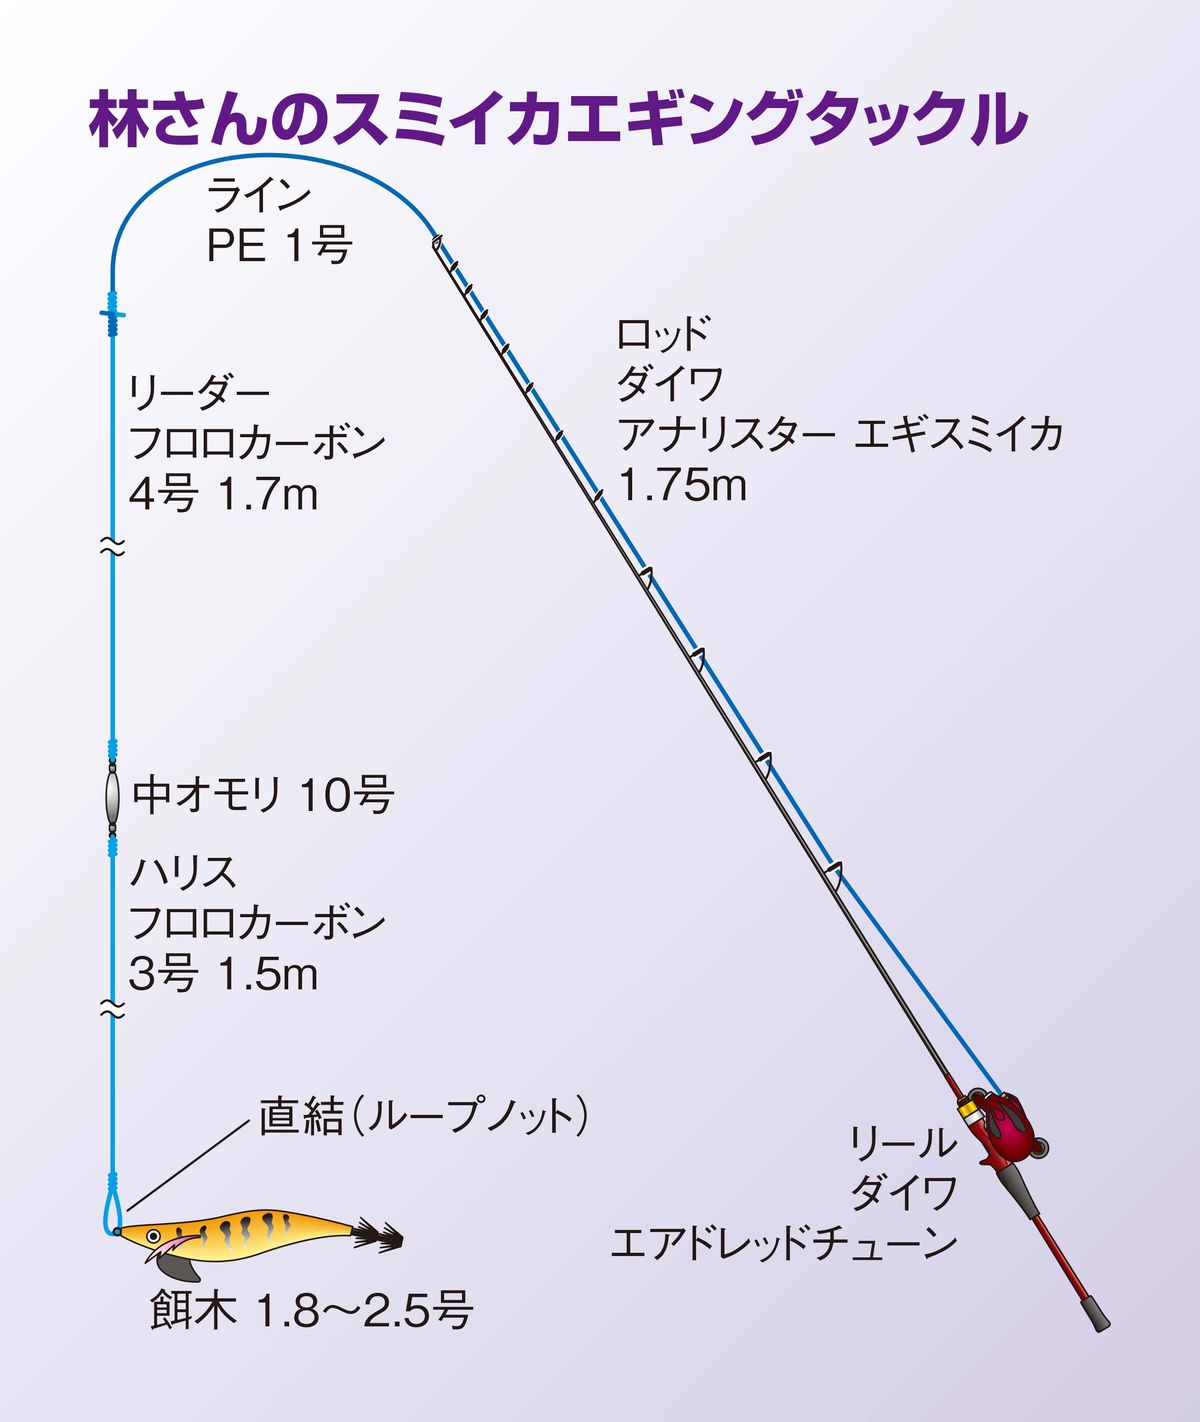 スミイカ釣り 釣期は10 1月 東京湾の美味ターゲット 魚種別釣りガイド